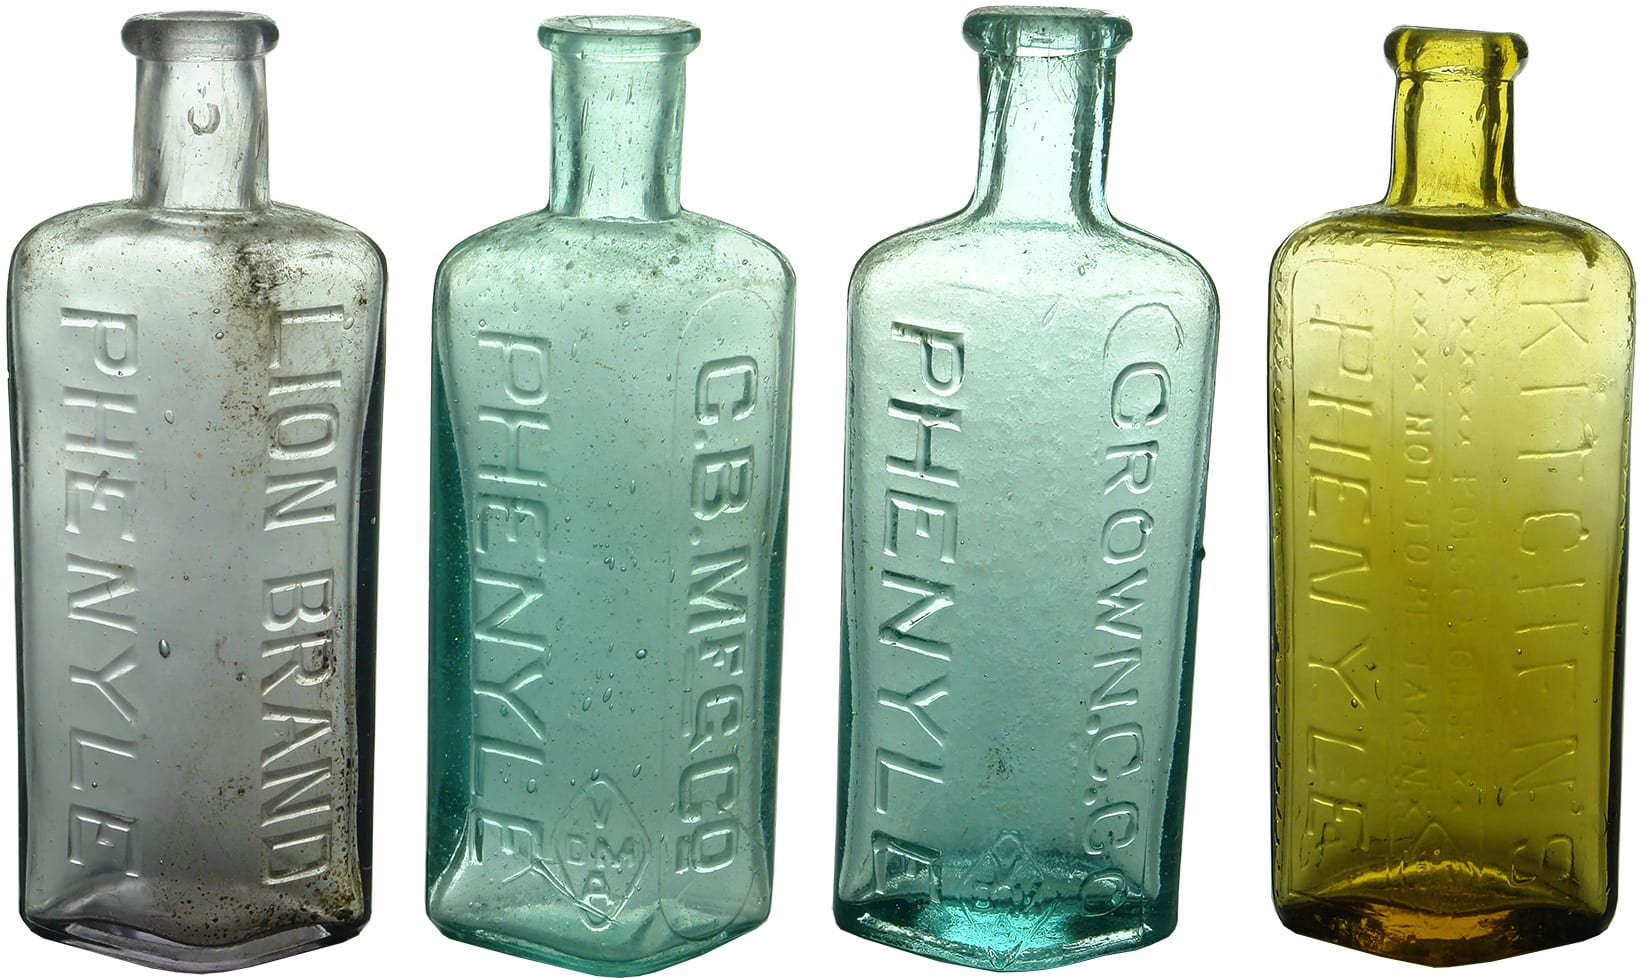 Australian Phenyle Poison Bottles